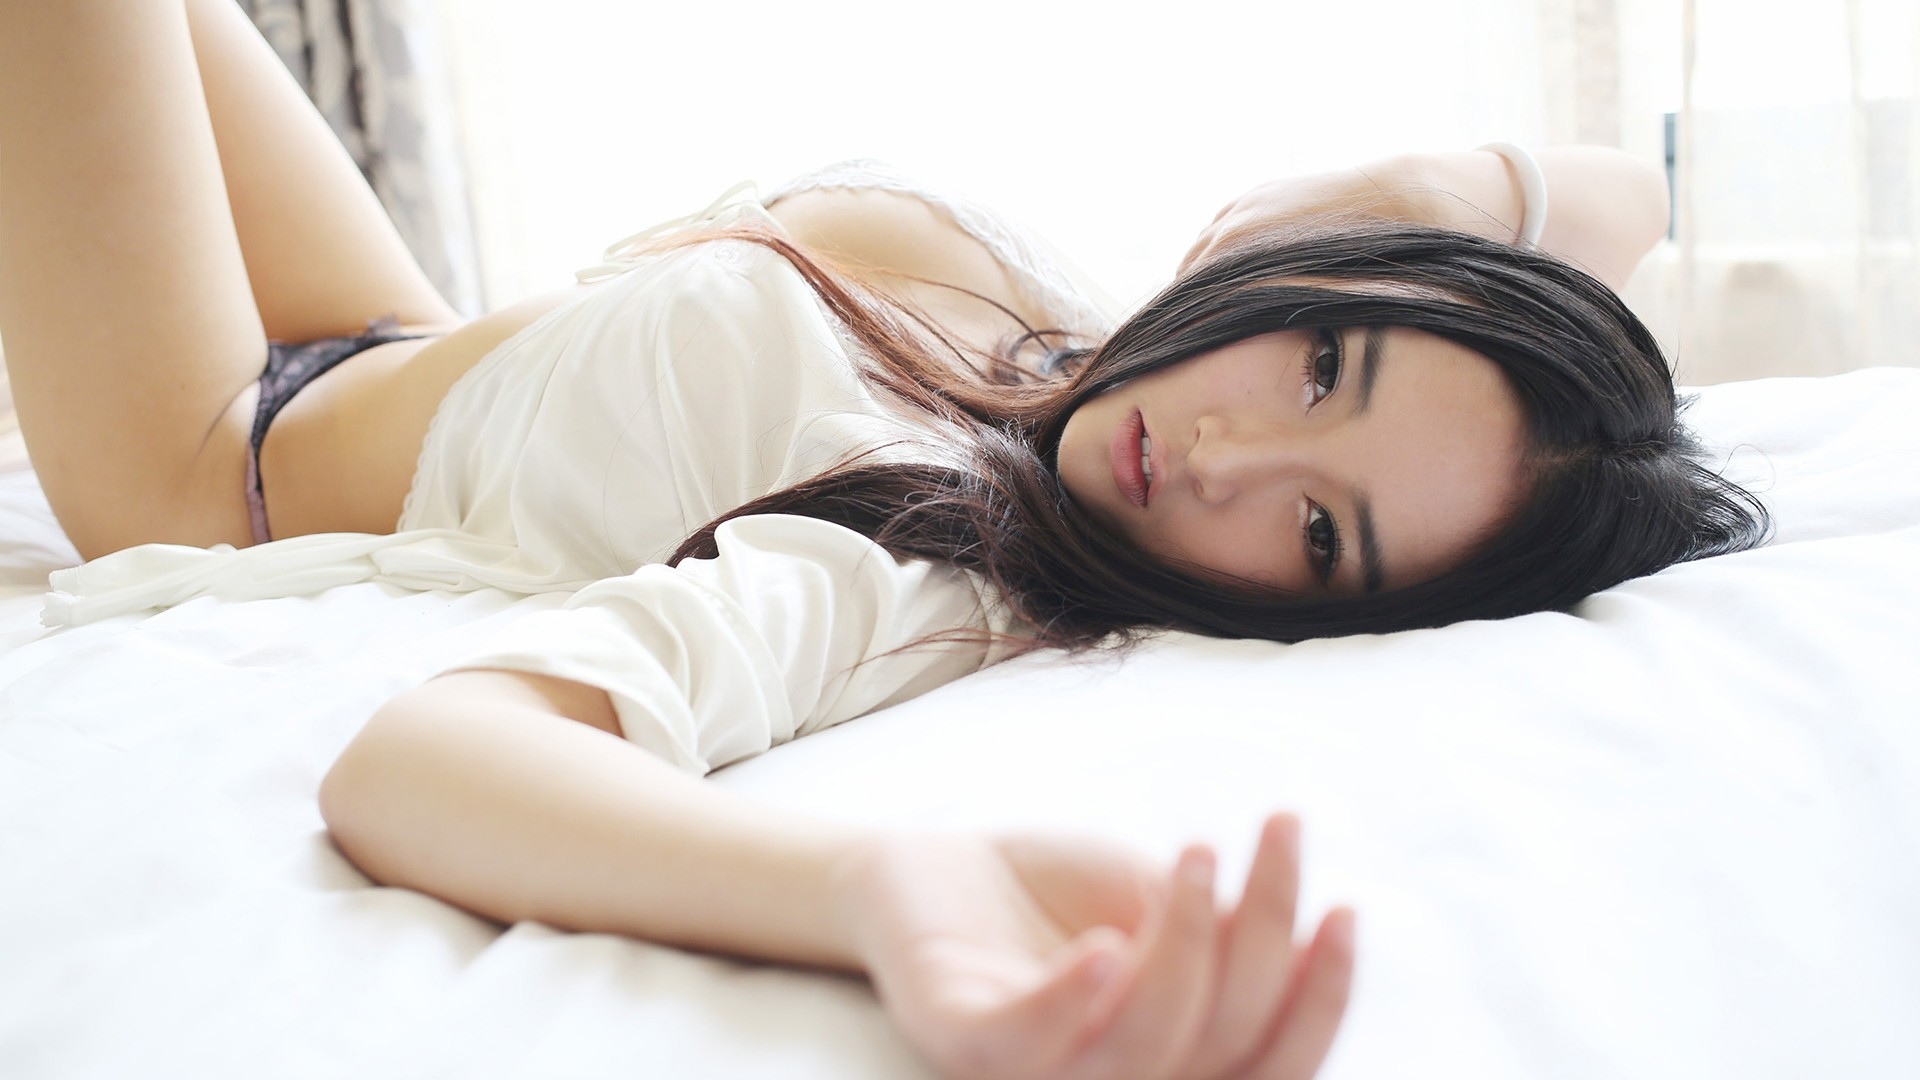 Стройные секс японки как Монока самые изумительные девицы